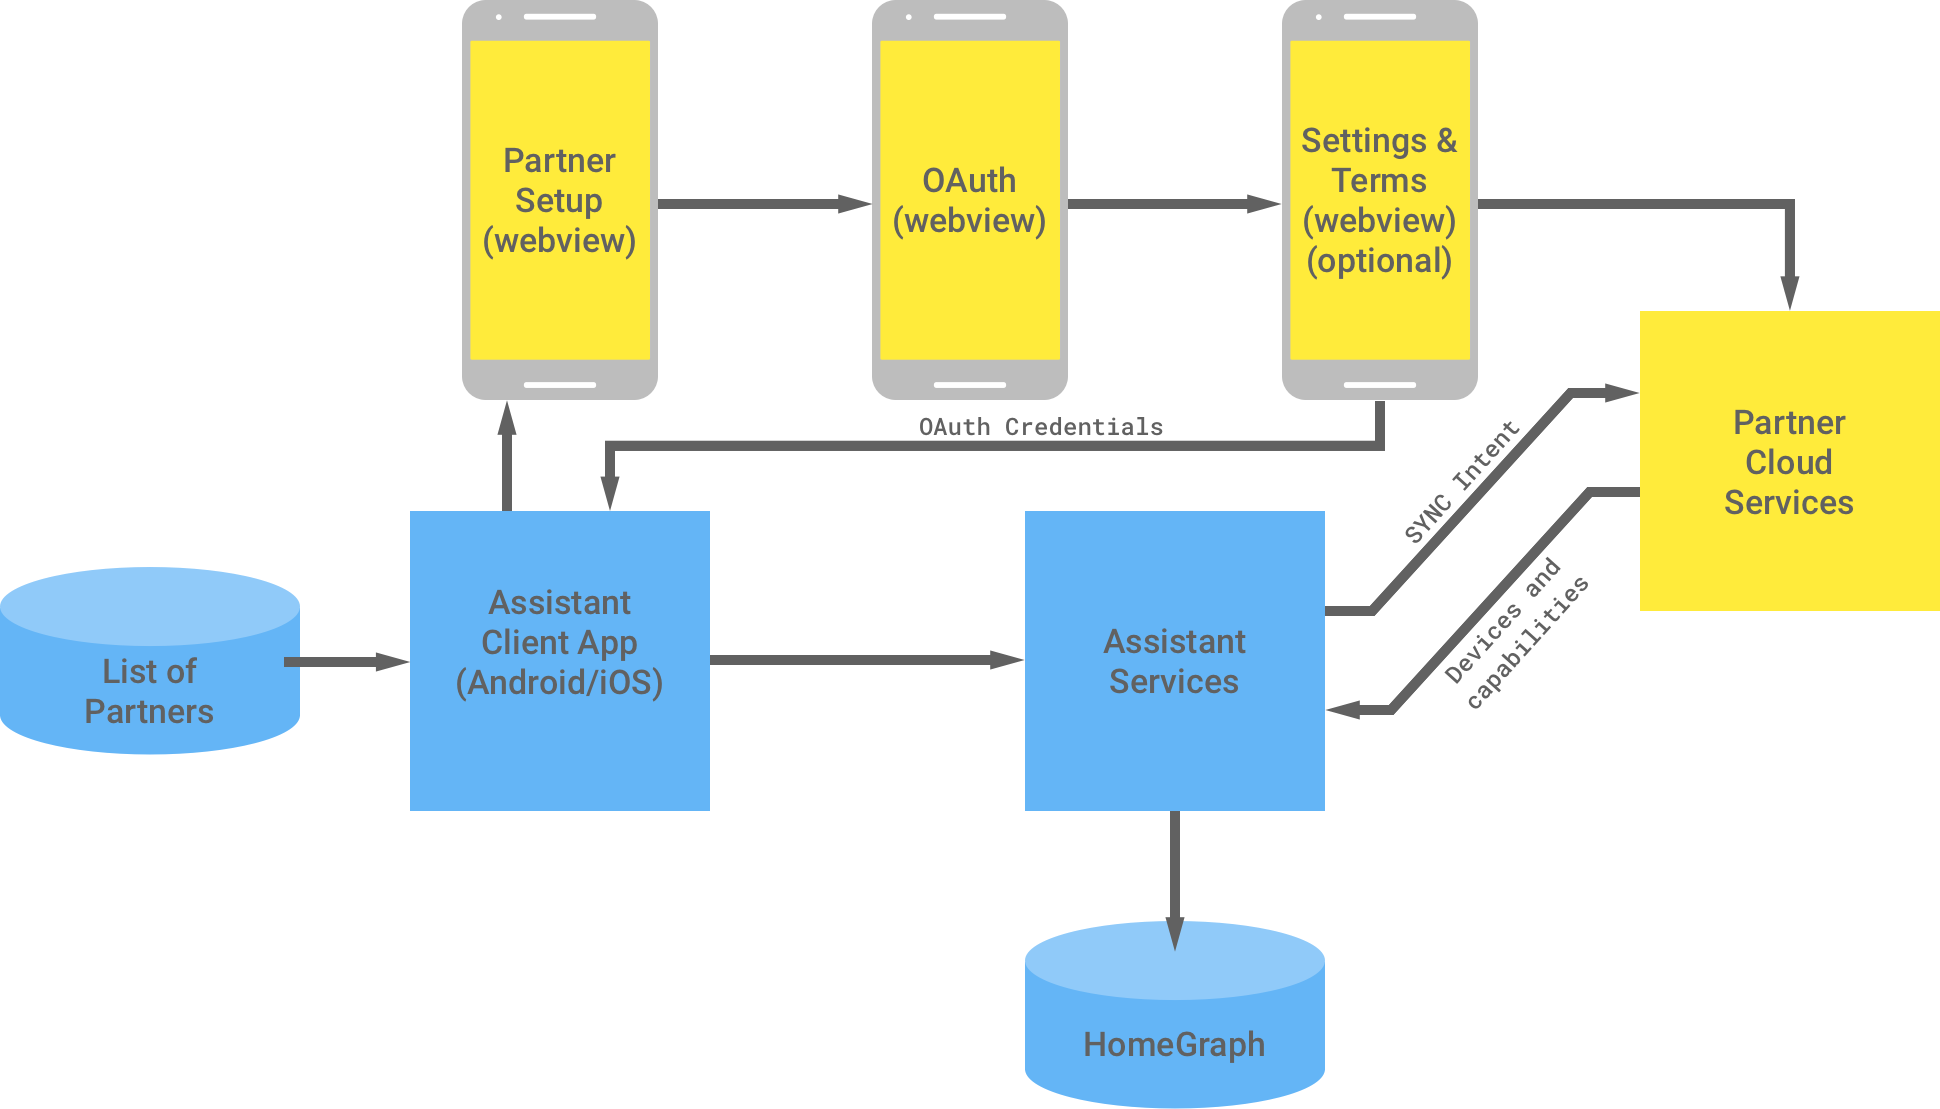 下圖顯示 Google 基礎架構與合作夥伴基礎架構之間的互動。在 Google 基礎架構中，Google 助理用戶端應用程式會提供一份合作夥伴清單，這些合作夥伴會傳送至合作夥伴基礎架構完成 OAuth 驗證。合作夥伴端的 OAuth 驗證包括合作夥伴設定 WebView、OAuth WebView、選用設定與條款，以及合作夥伴雲端服務。接著，合作夥伴基礎架構會將 OAuth 憑證傳回 Google 助理用戶端應用程式。合作夥伴雲端服務會將可用的裝置和功能傳送至 Google 助理服務，再將資訊儲存在 Home Graph 中。